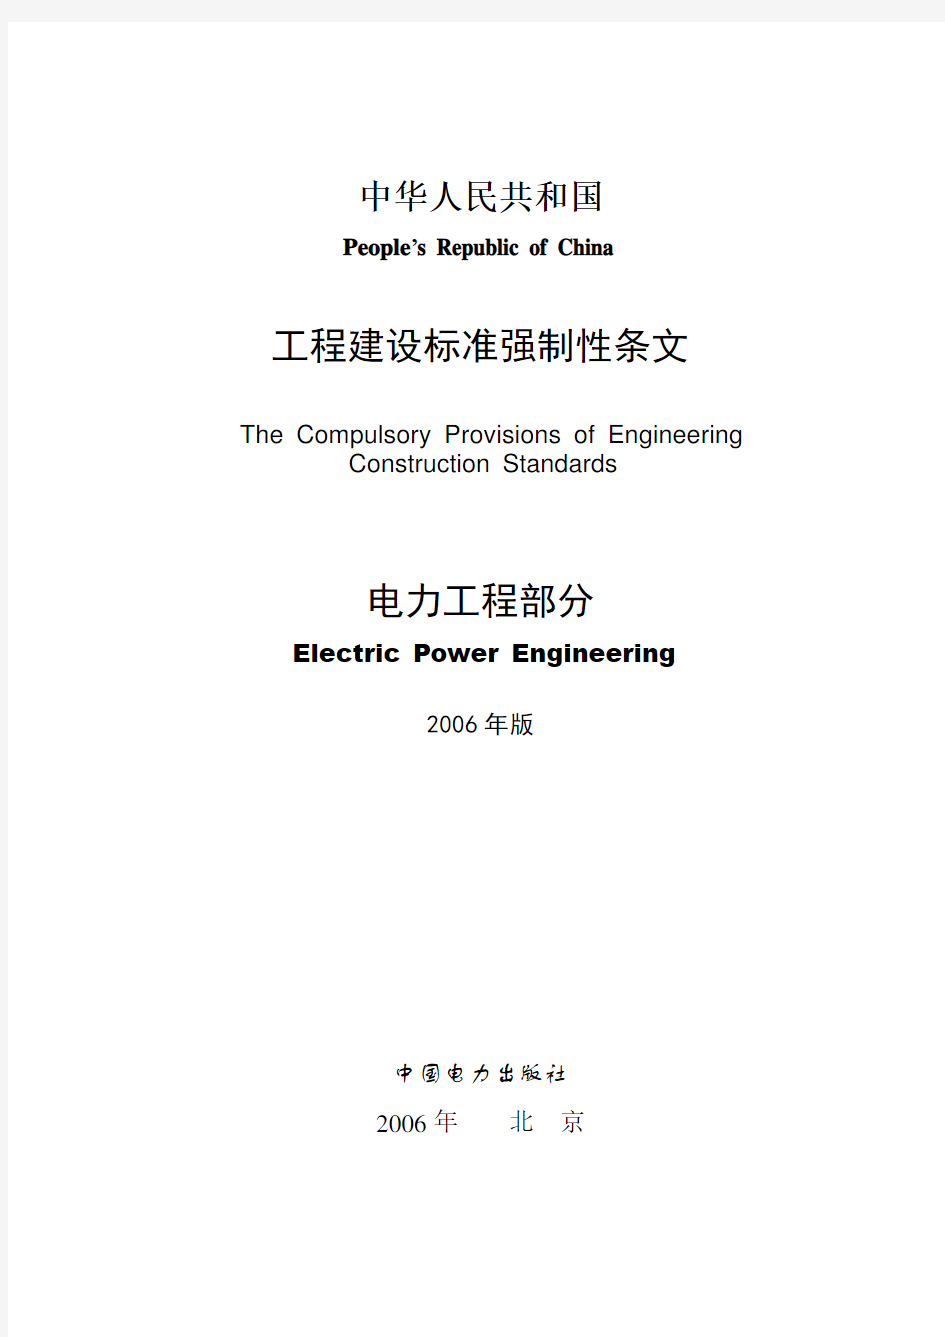 中华人民共和国工程建设标准强制性条文(电力工程部分).doc